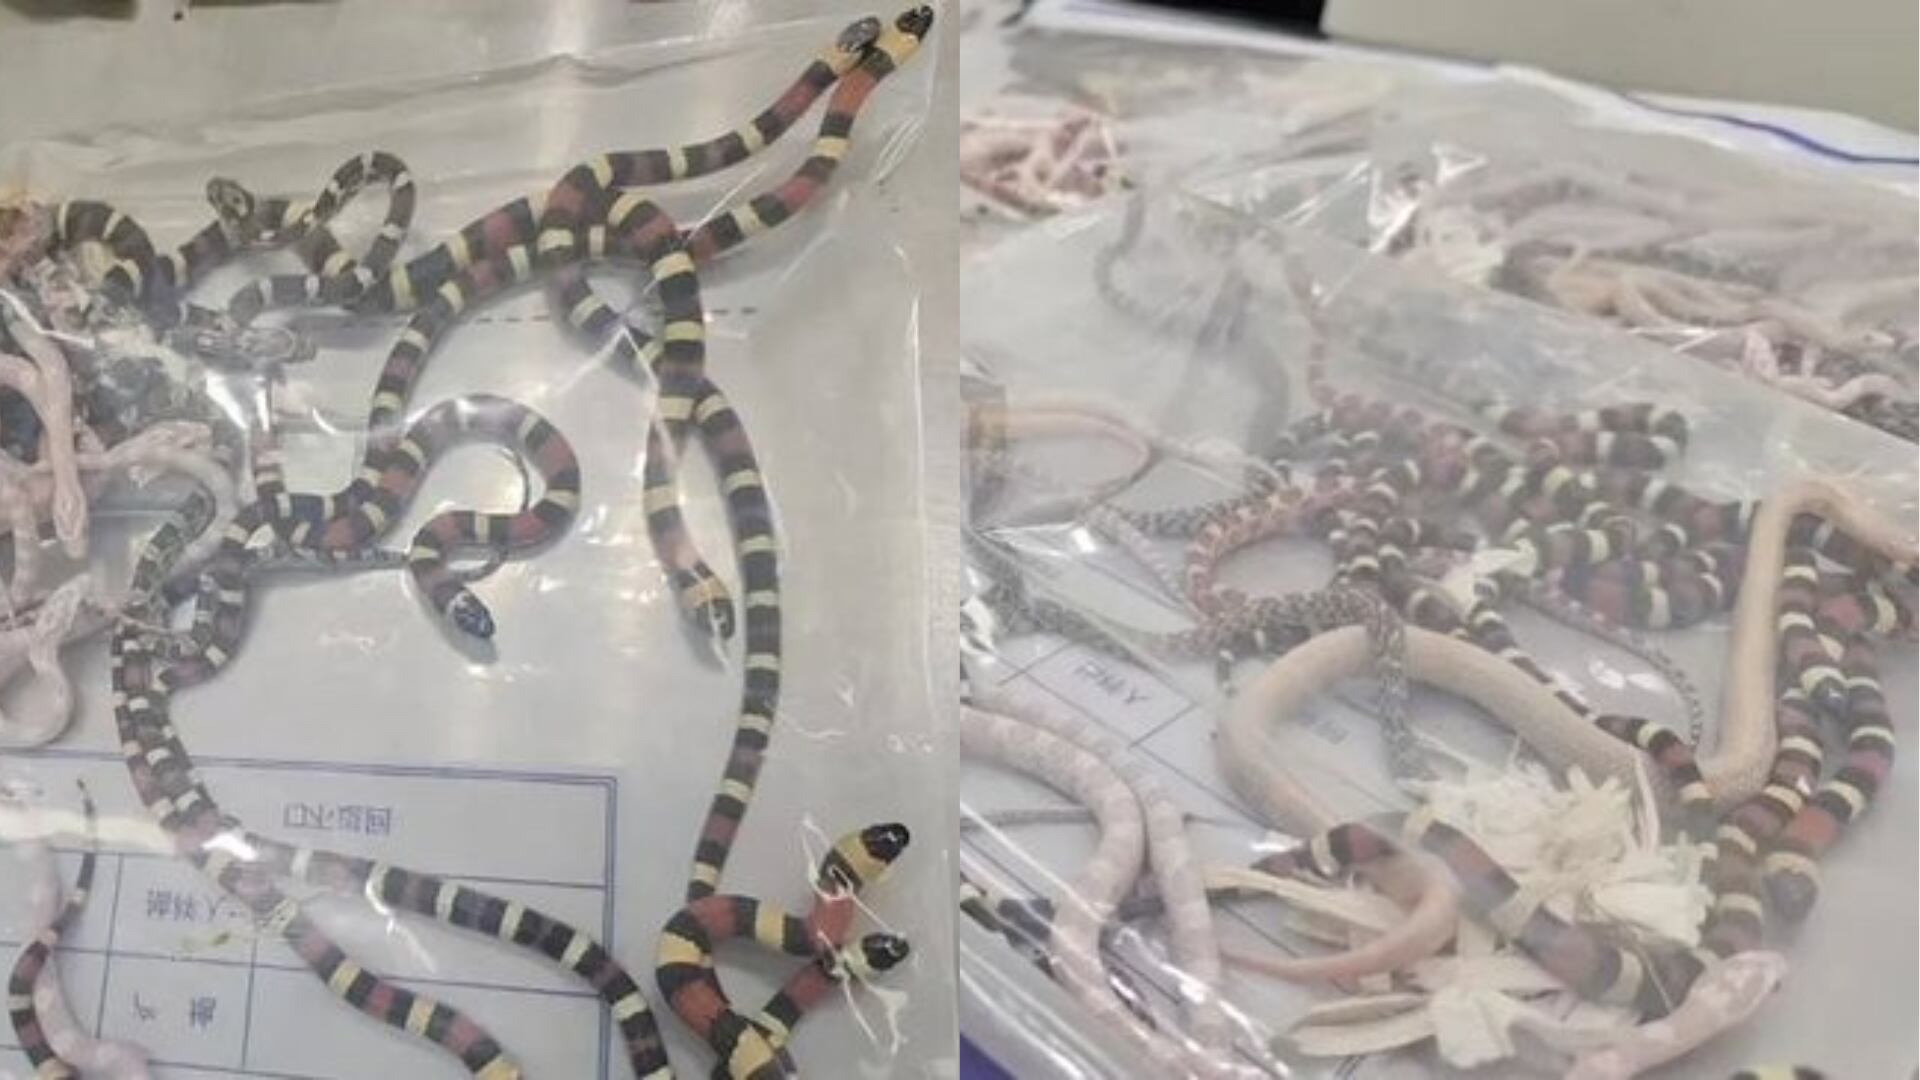 Agentes de aduanas inspeccionaron las bolsas de plástico llenas de serpientes vivas incautadas en la frontera de China.